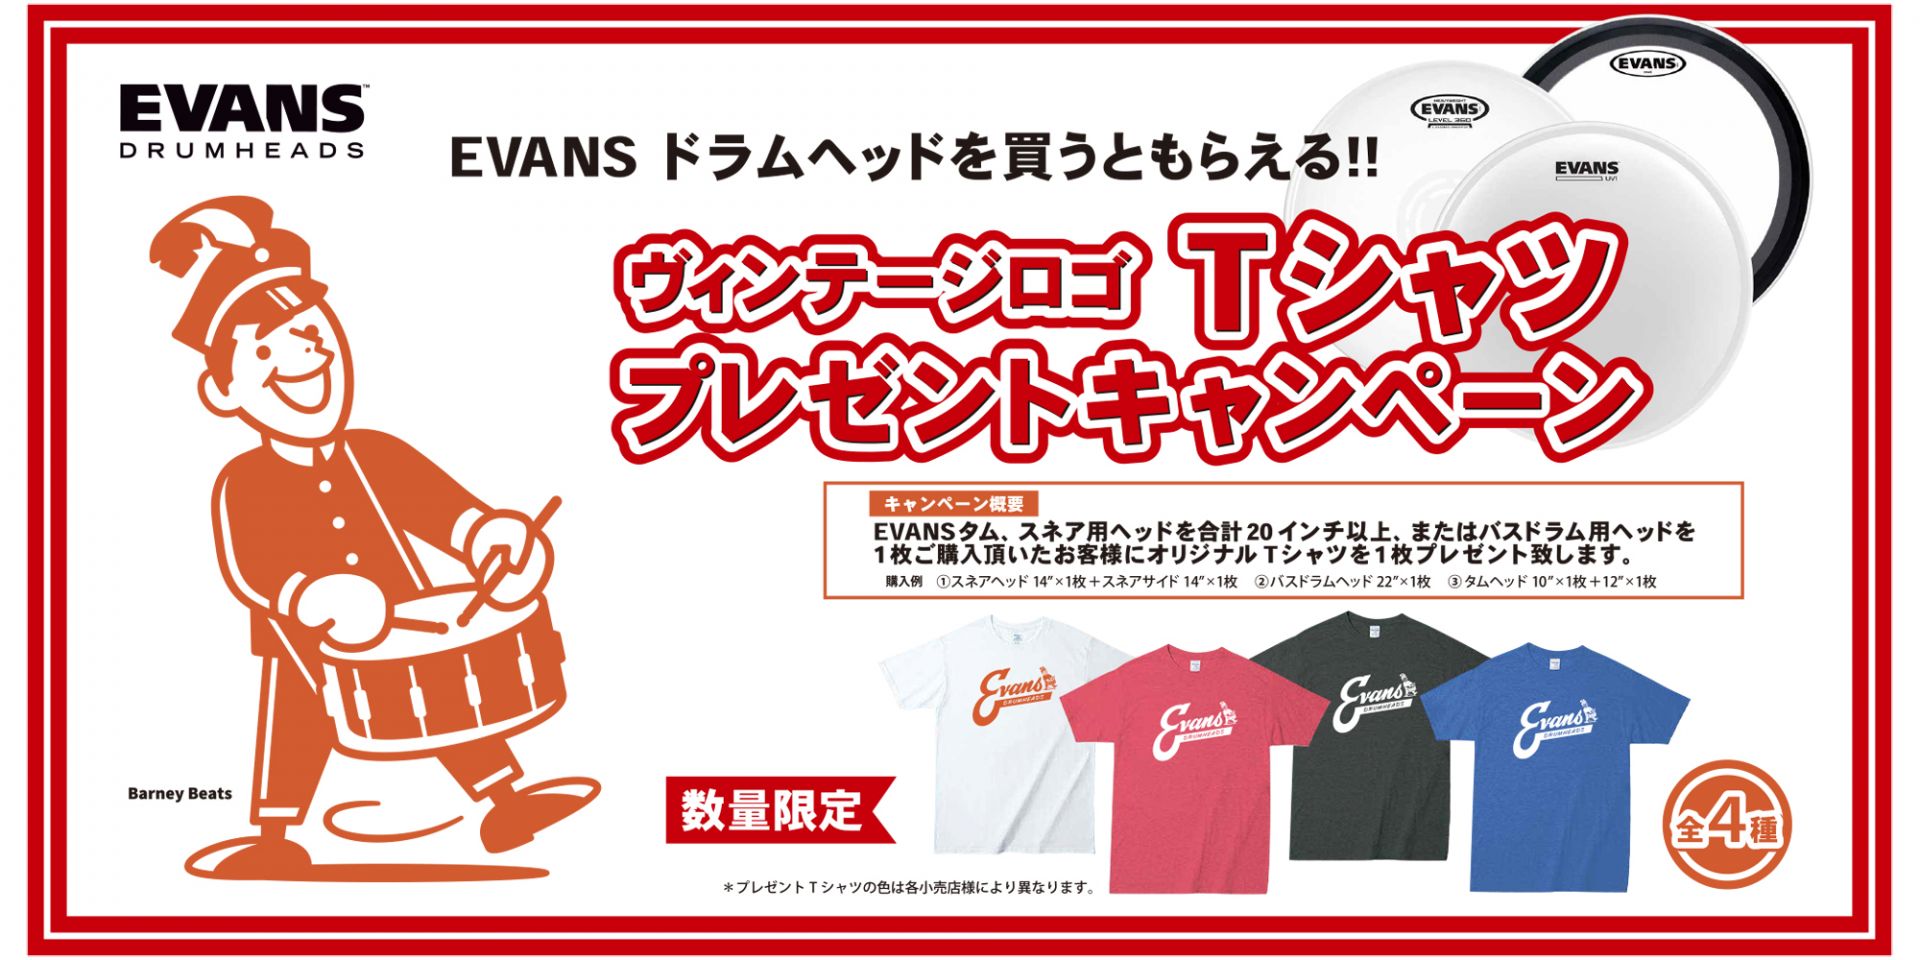 *Evans Tシャツ プレゼントキャンぺーン 2019 [!!【キャンペーン概要】!!] - 内容：　Evans タム、スネア用ヘッド合計20インチ以上、またはバスドラム用ヘッドを1枚ご購入いただいたお客様にオリジナル Tシャツを1枚プレゼント致します。 - 購入例： +スネアヘッド 14”× 1 […]